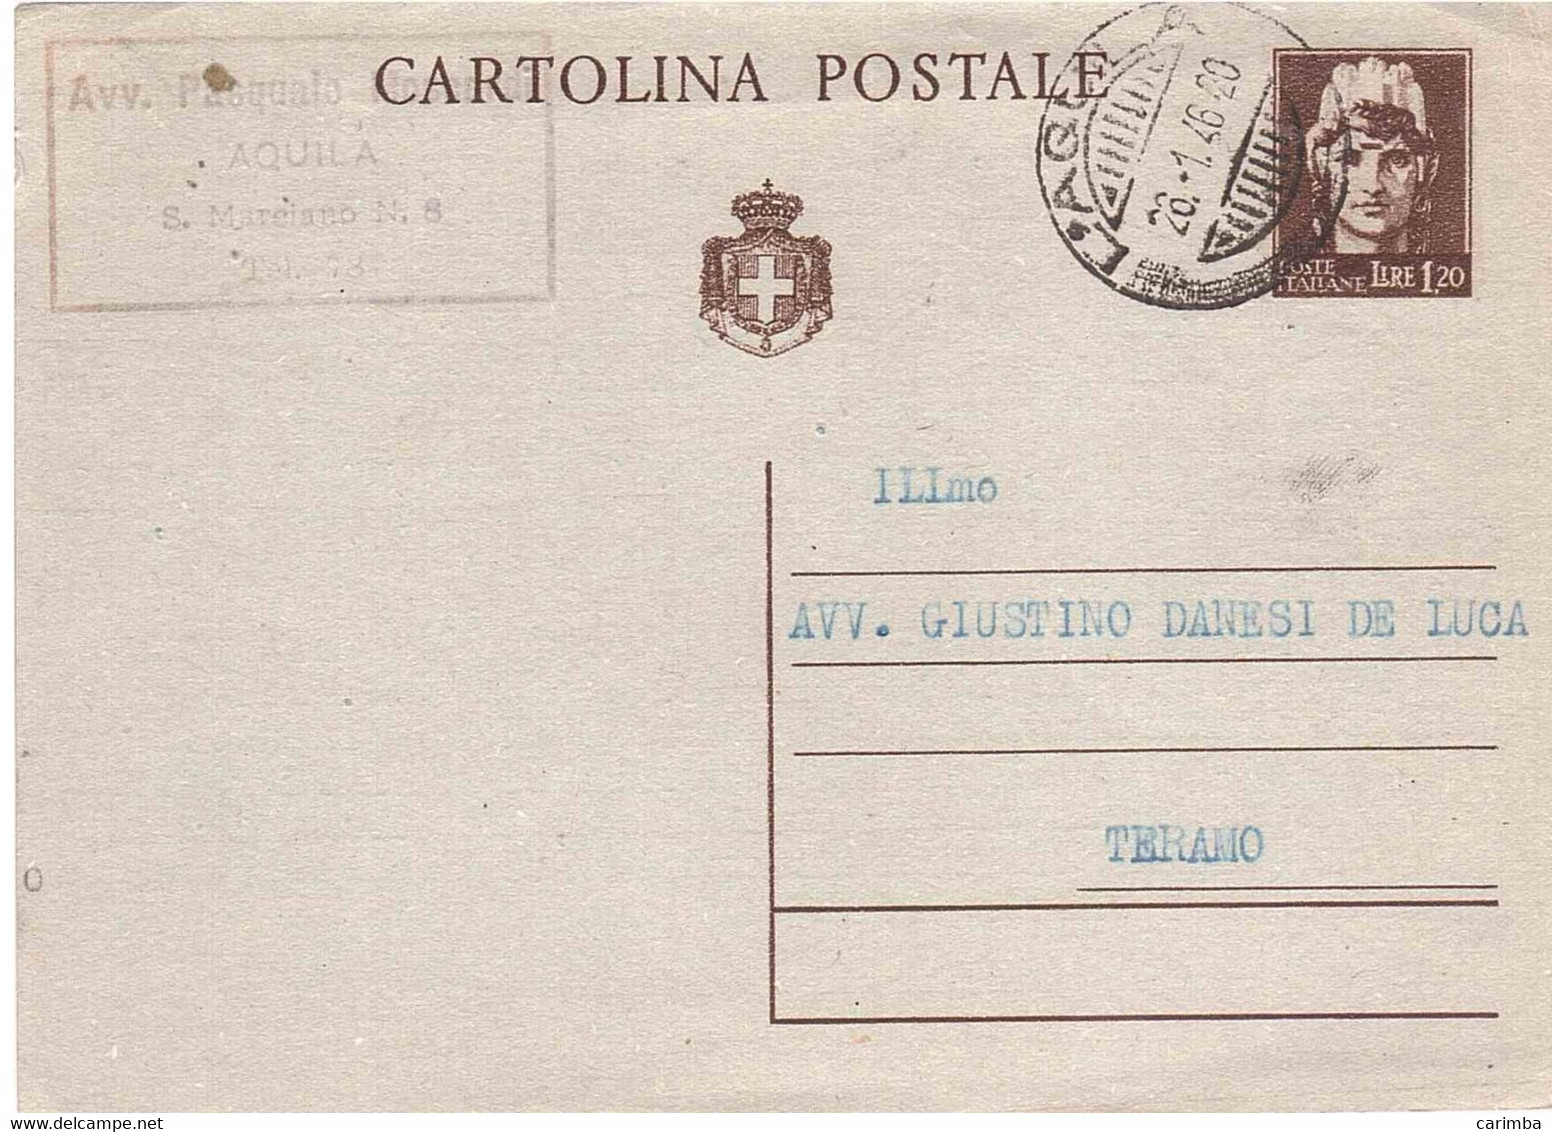 CARTOLINA POSTALE LIRE 1,20 - Interi Postali